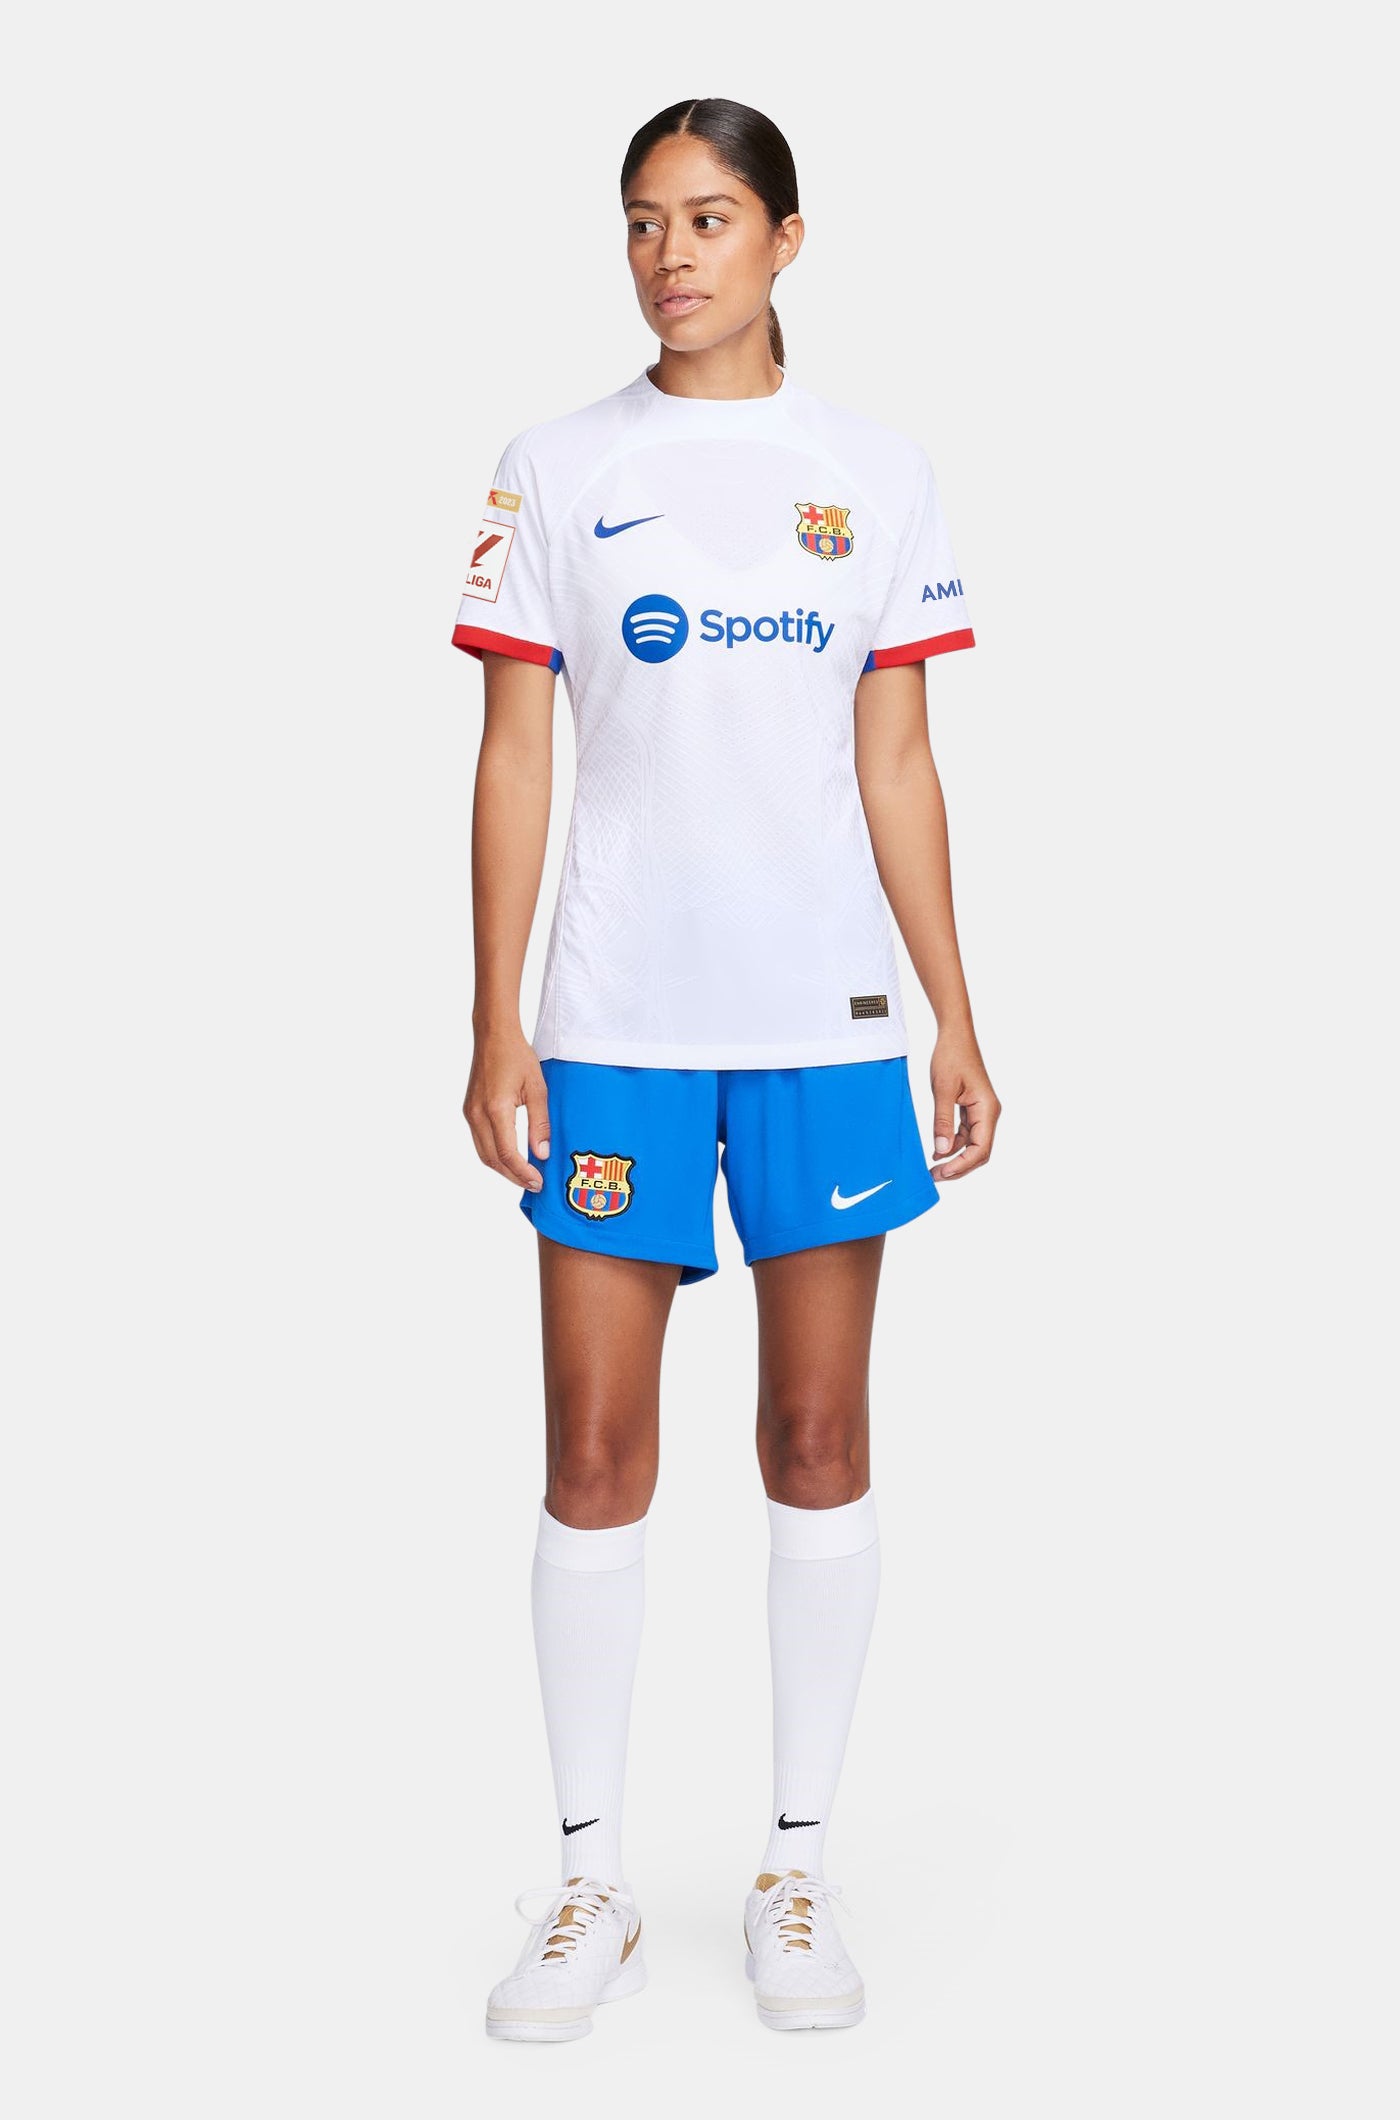 LFP FC Barcelona Away Shirt 23/24 Player’s Edition - Women